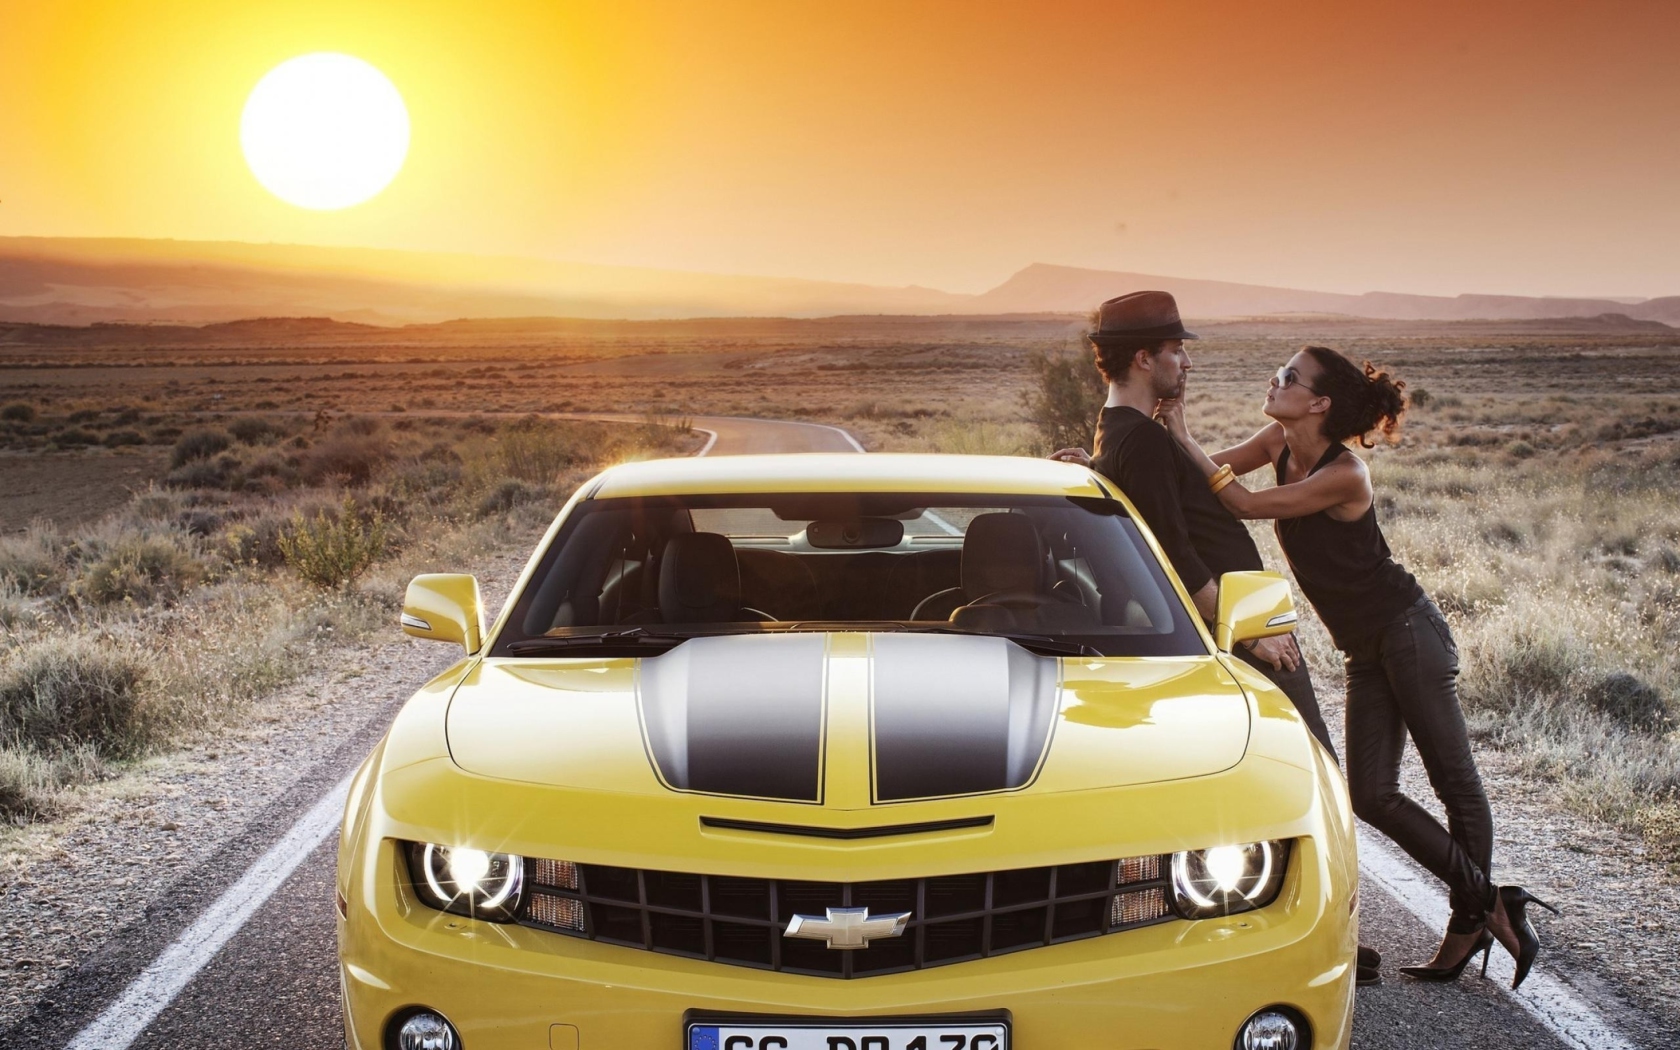 Fondo de pantalla Couple And Yellow Chevrolet 1680x1050